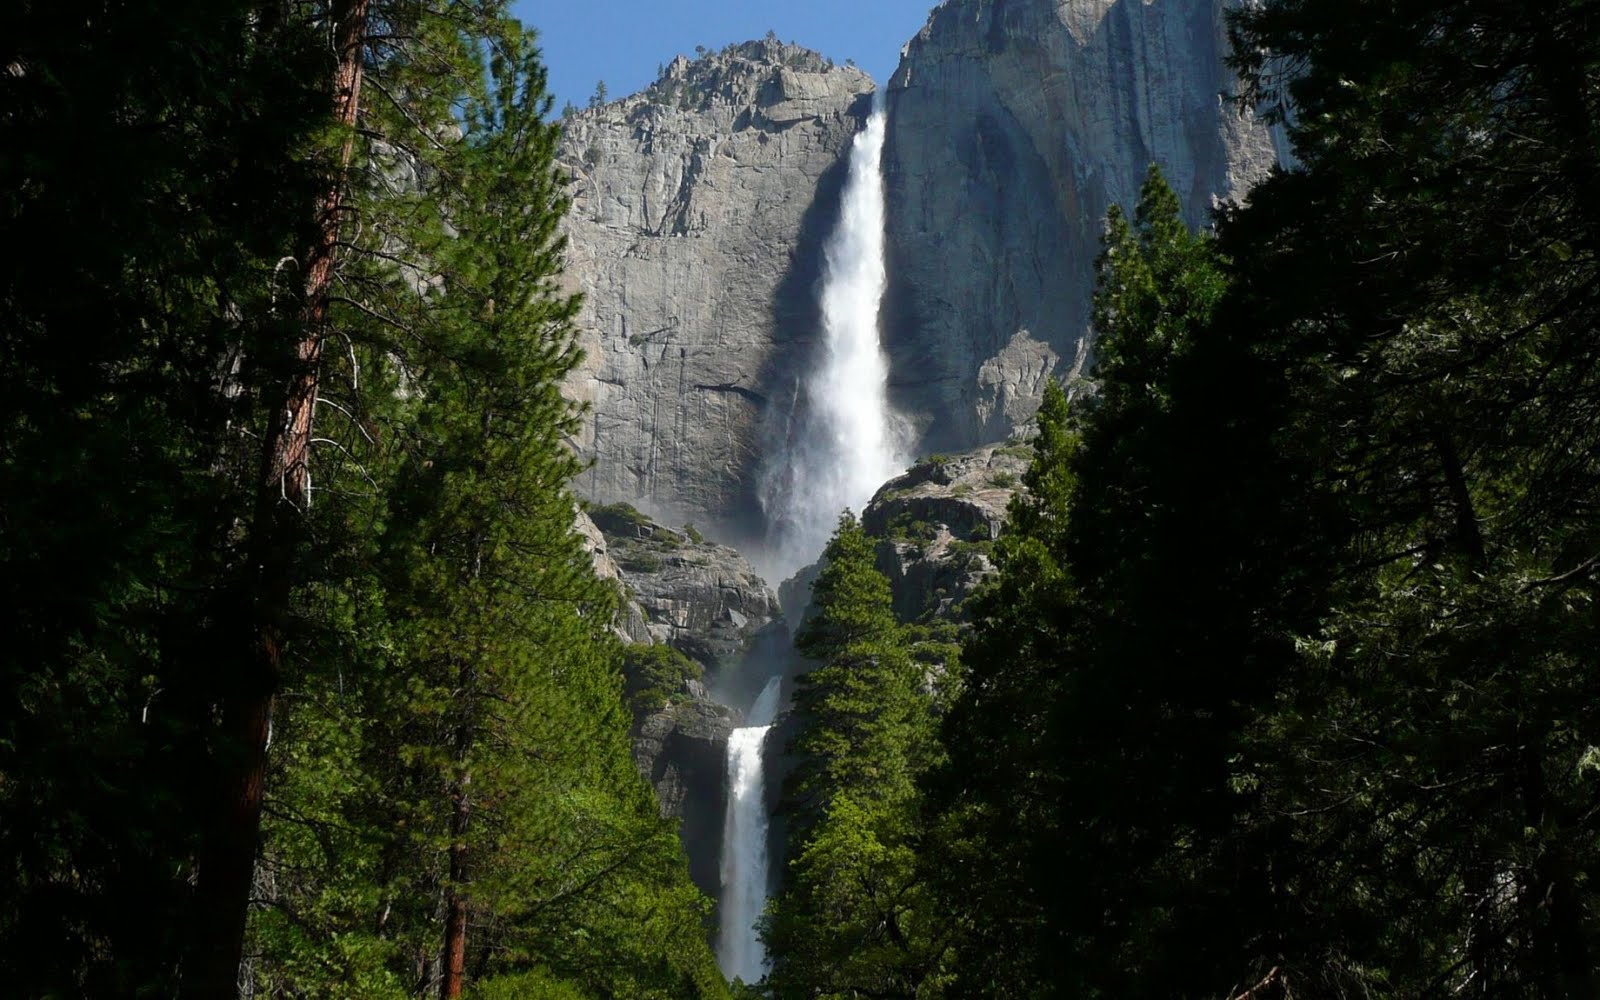 http://4.bp.blogspot.com/_HzAThb2RgMc/TLydLksfnJI/AAAAAAAABzk/en8YH6oTaKA/s1600/Yosemite_Falls_1680%2Bx%2B1050%2Bwidescreen.jpg